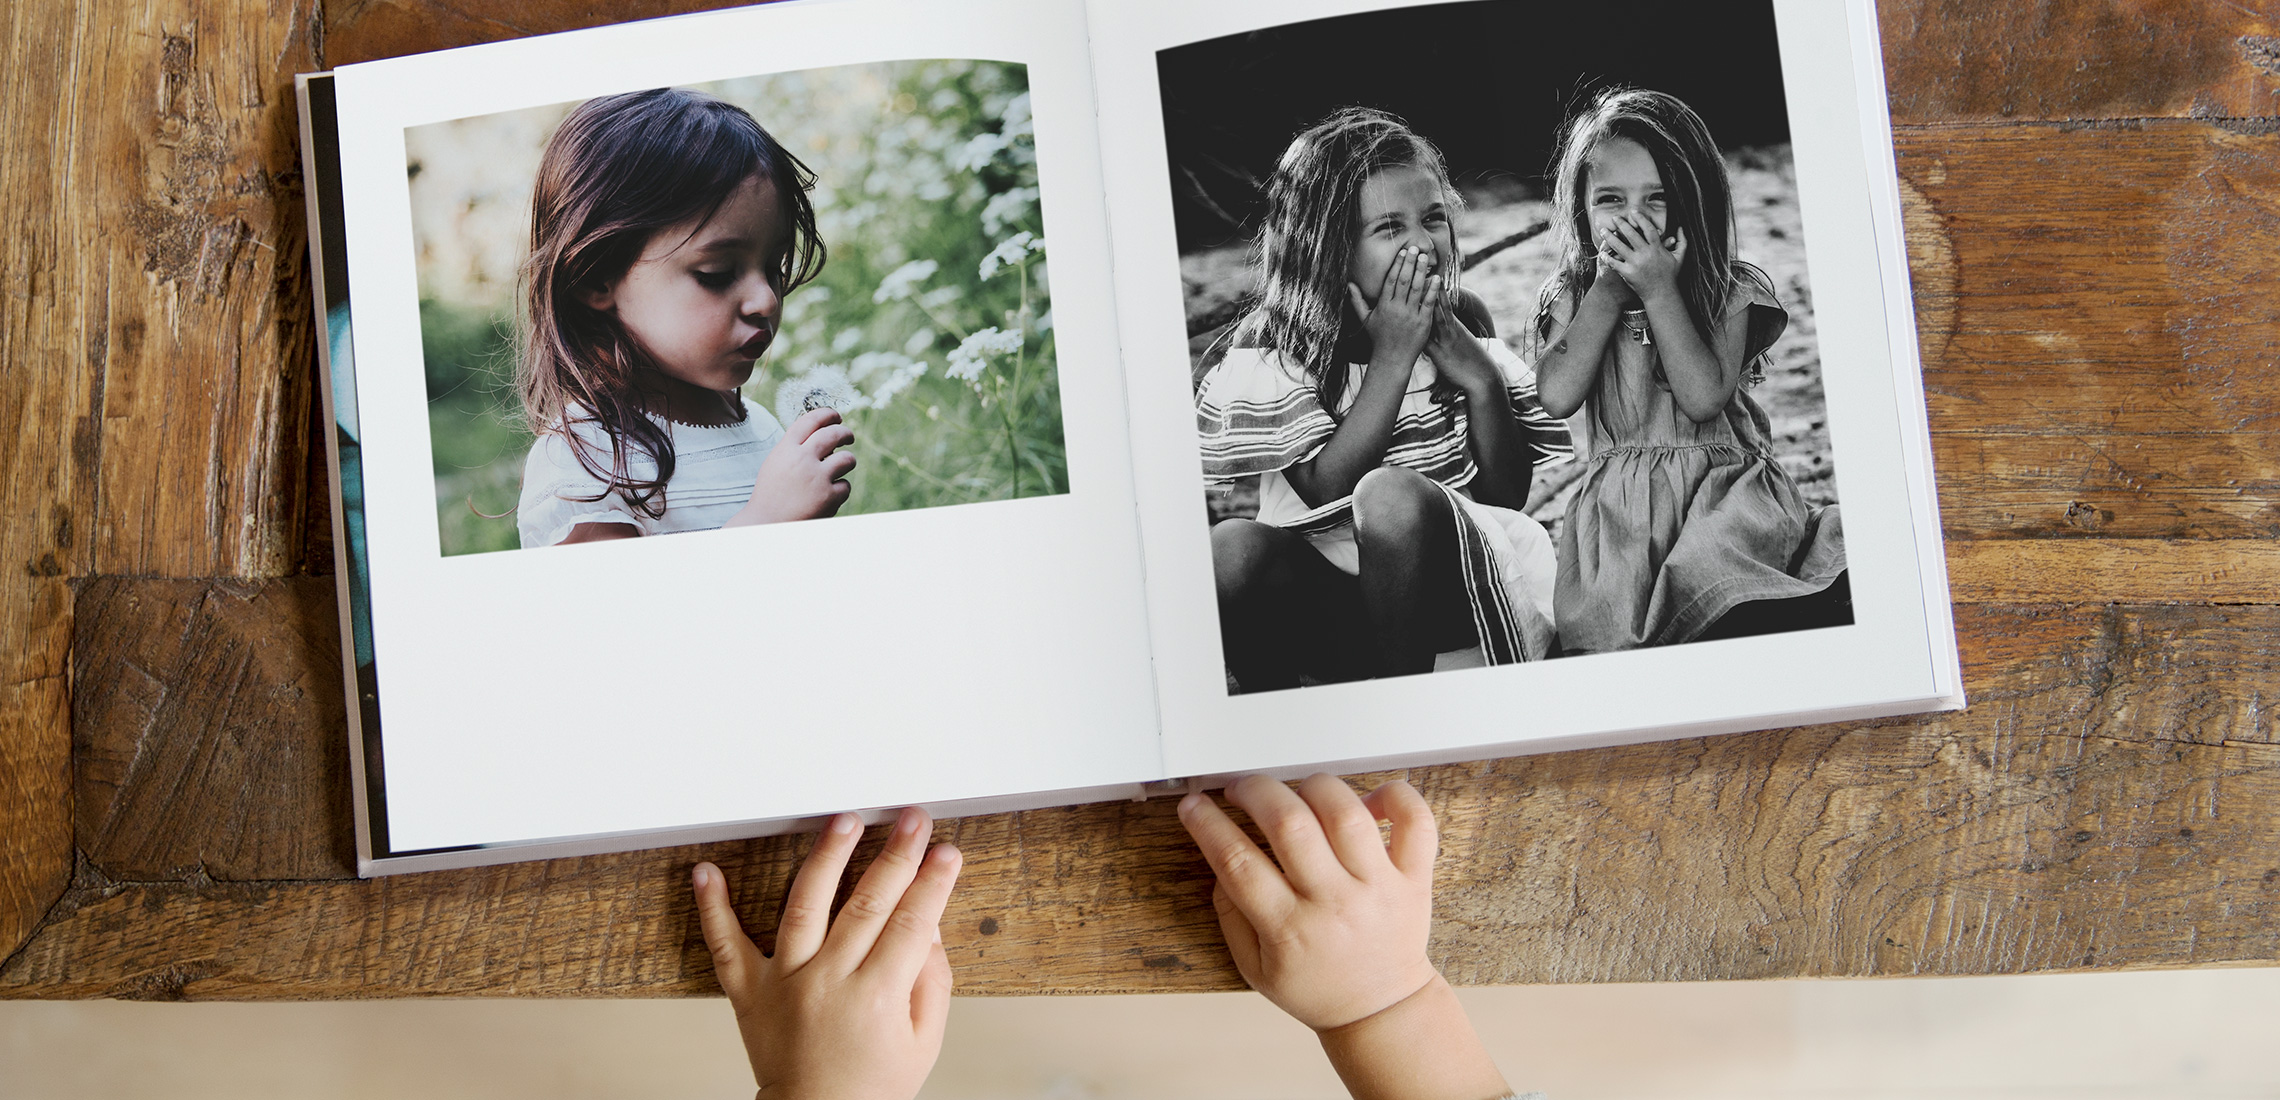 Un niño pequeño hojeando un fotolibro cuadrado con imágenes de niñas riendo.